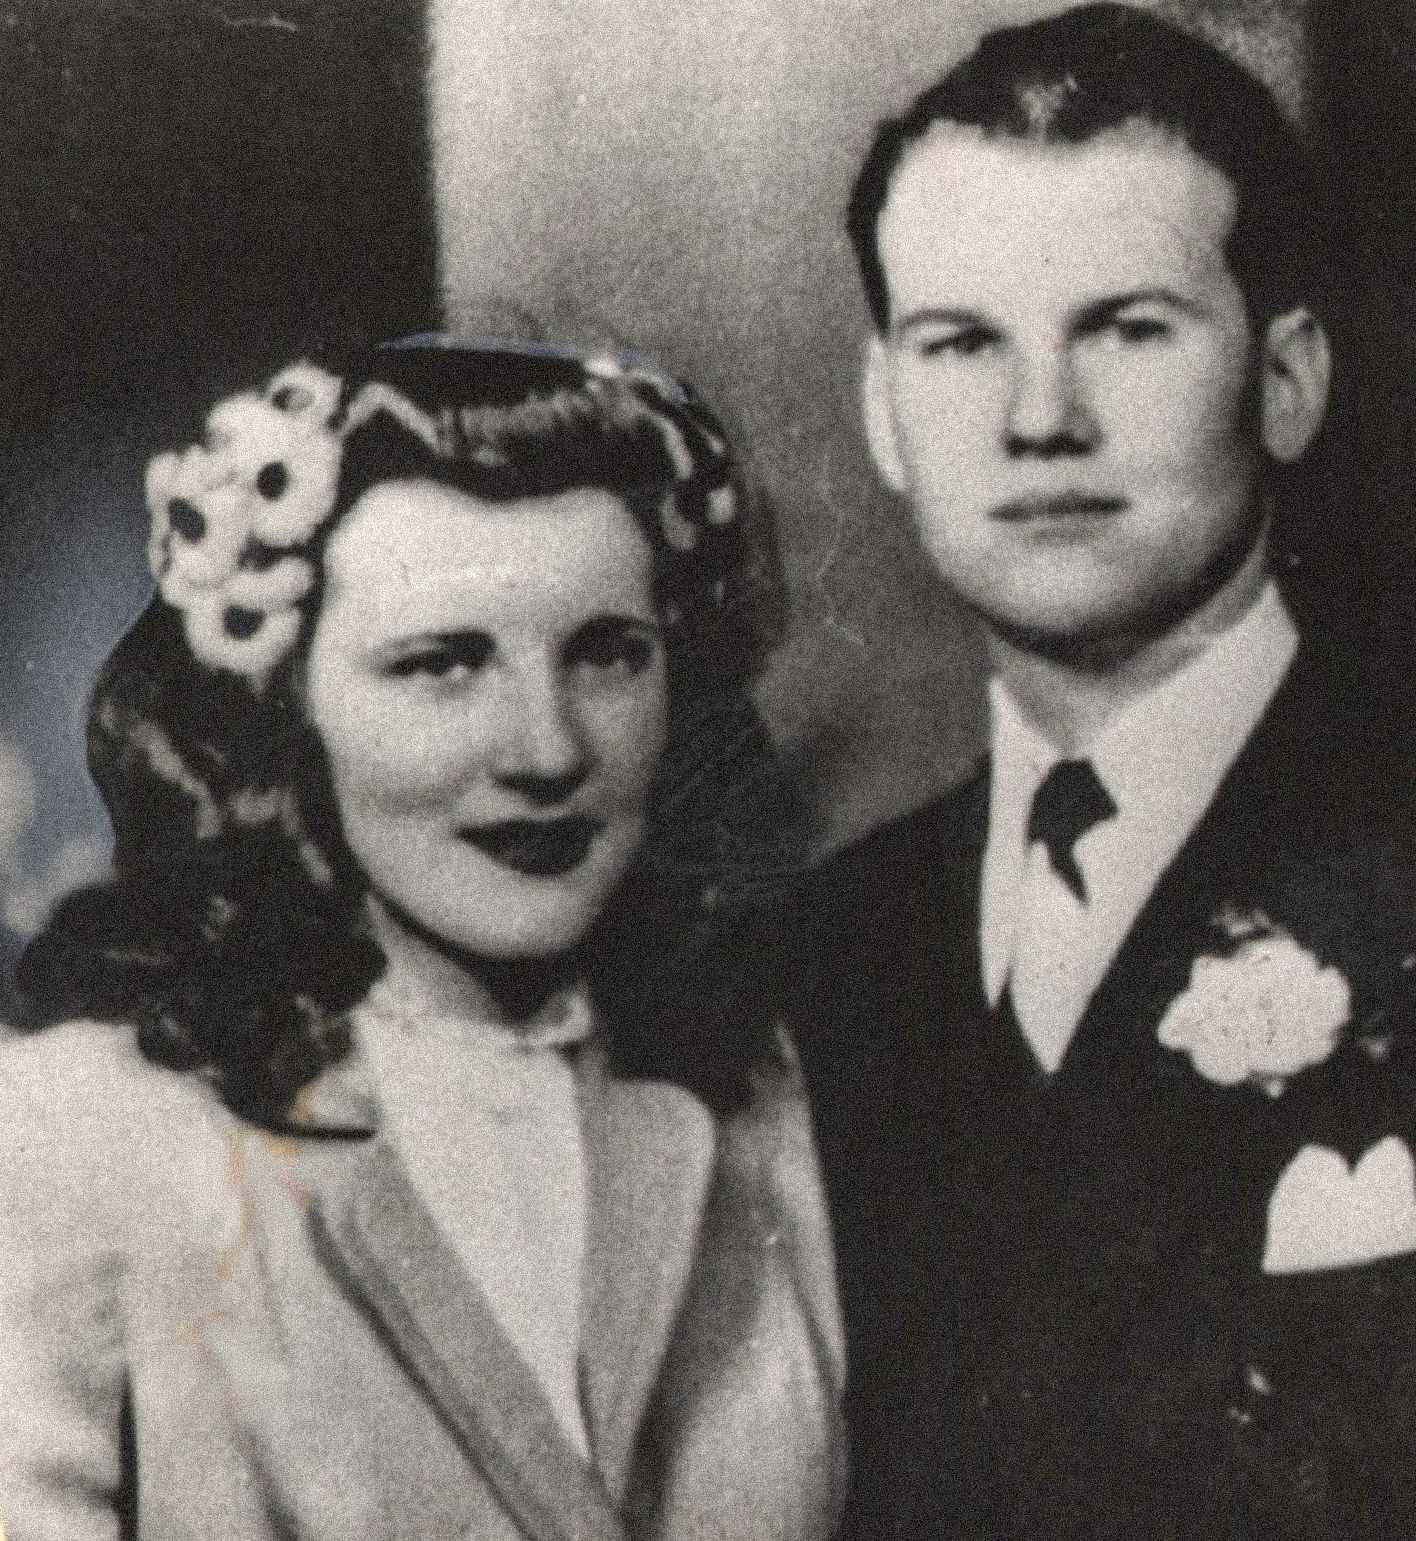 Na sliki sta Sam in Marilyn Sheppard, mlad in na videz srečen par. Poročila sta se 21. februarja 1945 in skupaj imela enega otroka, Sama Reesa Shepparda. Marilyn je bila v času umora noseča z drugim otrokom.